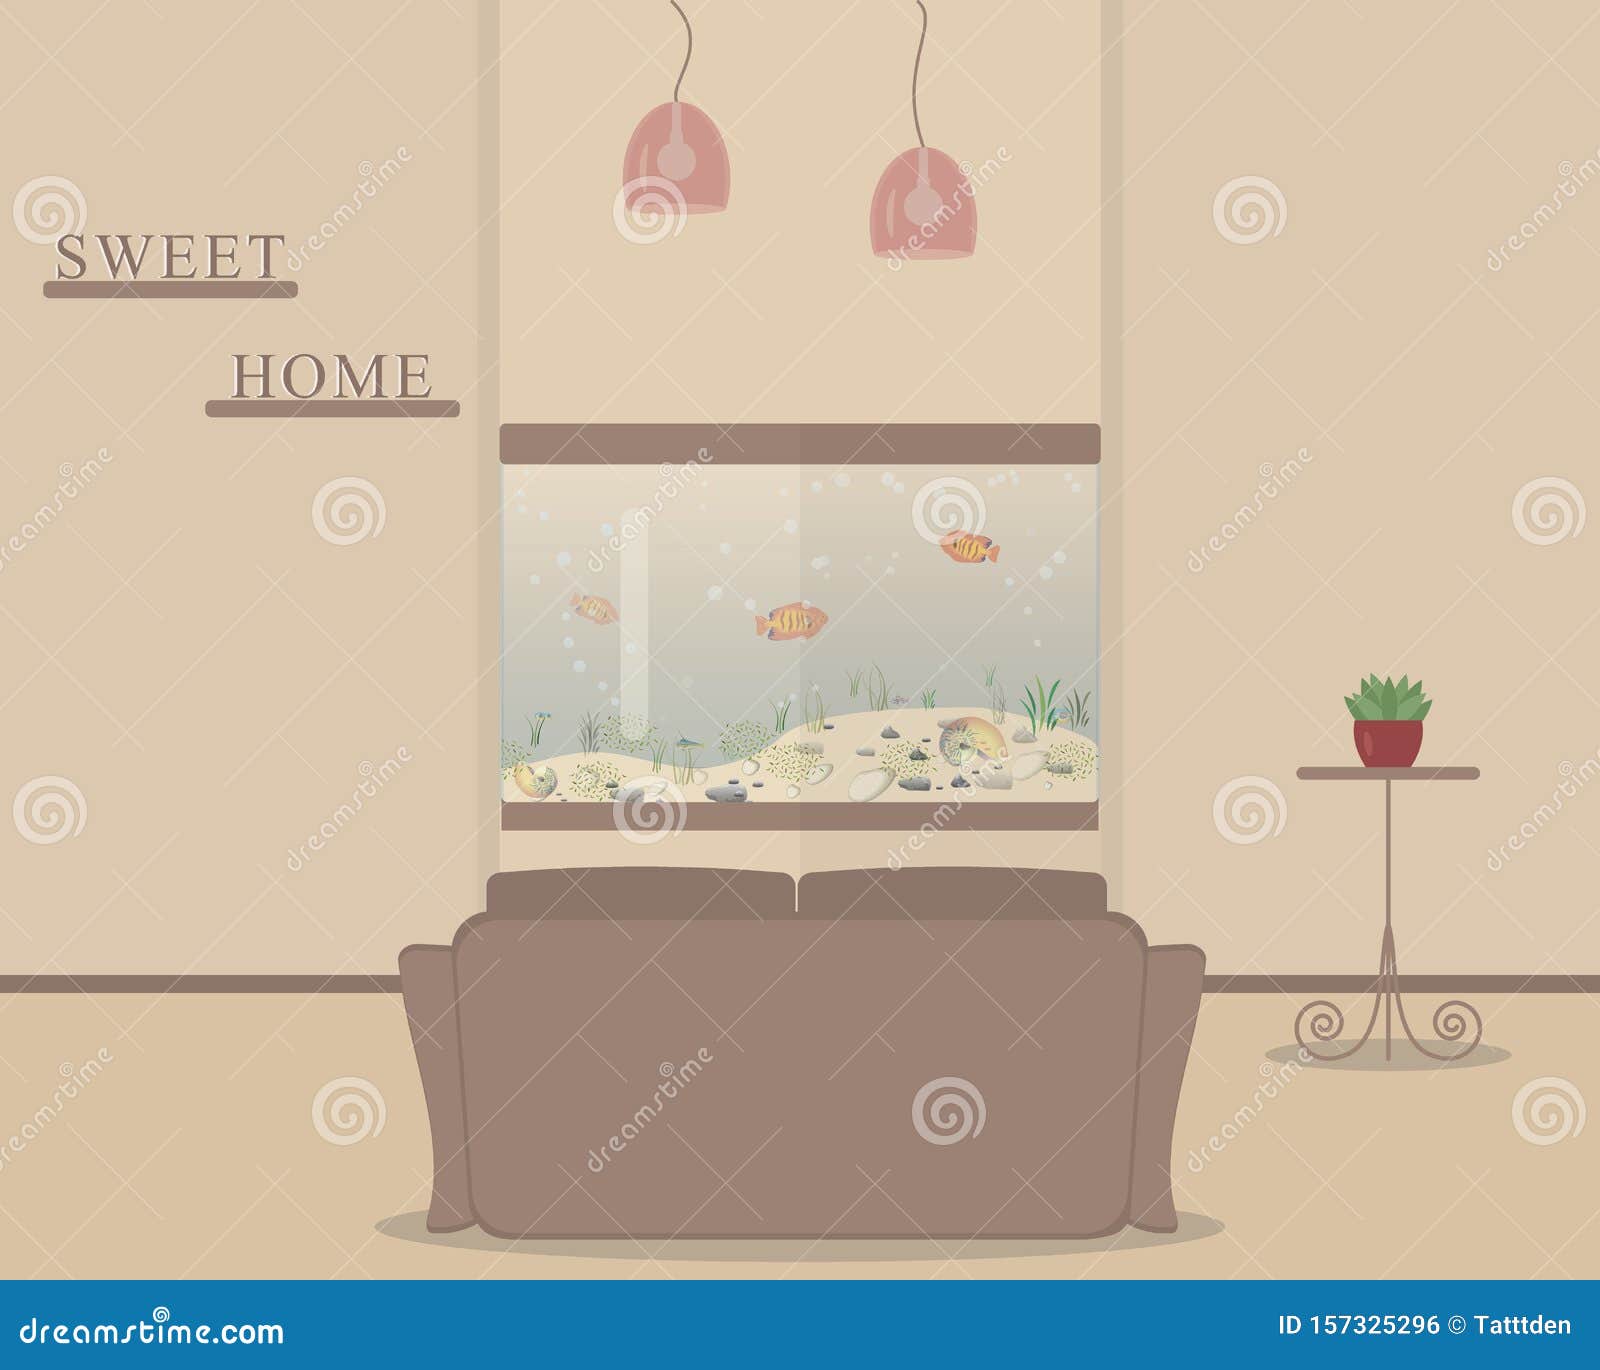 Đã bao giờ bạn nghĩ đến việc thêm một bể cá đẹp vào phòng khách để tạo sự tươi mới không? Hãy xem hình ảnh về bể cá xinh xắn trang trí cho phòng khách. Những con cá vàng và hoa sen được bố trí hài hòa trên một mảng đá, làm cho không gian sống của bạn trở nên vui nhộn và sinh động hơn.